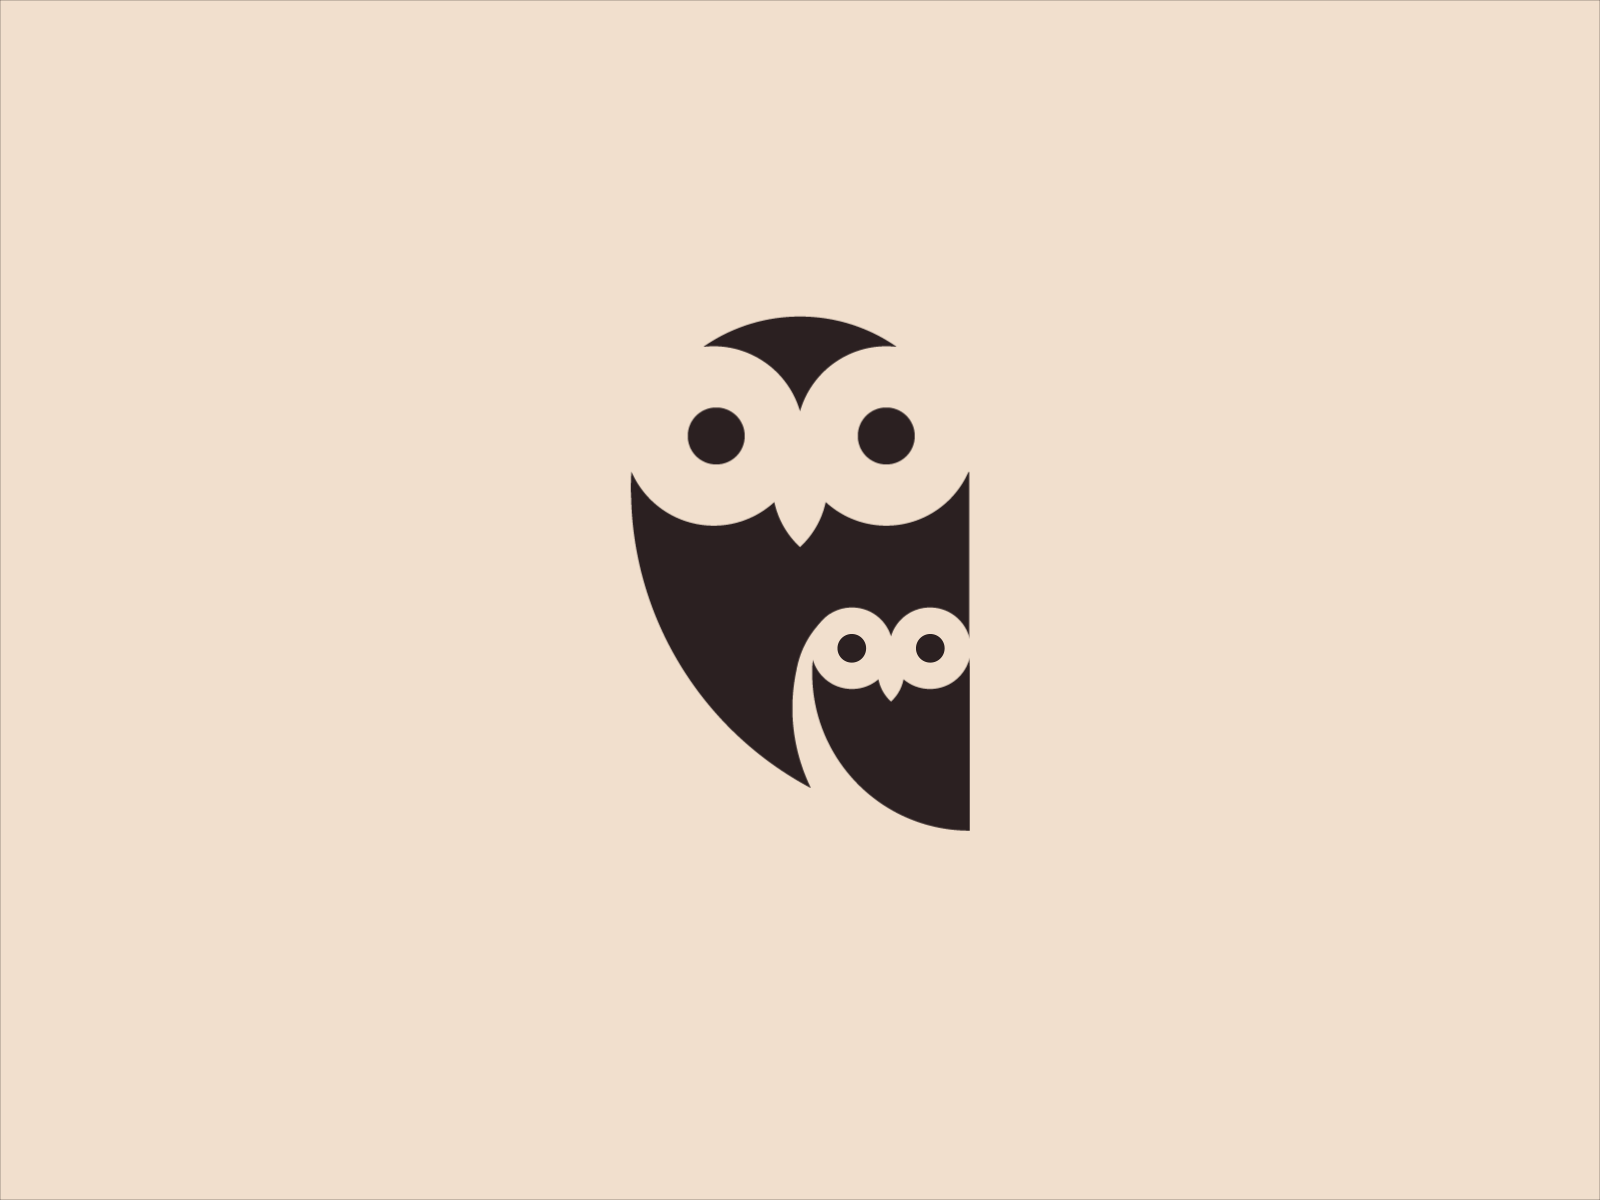 Owls flat design logo logo design logos logotype owl owl logo owls vector